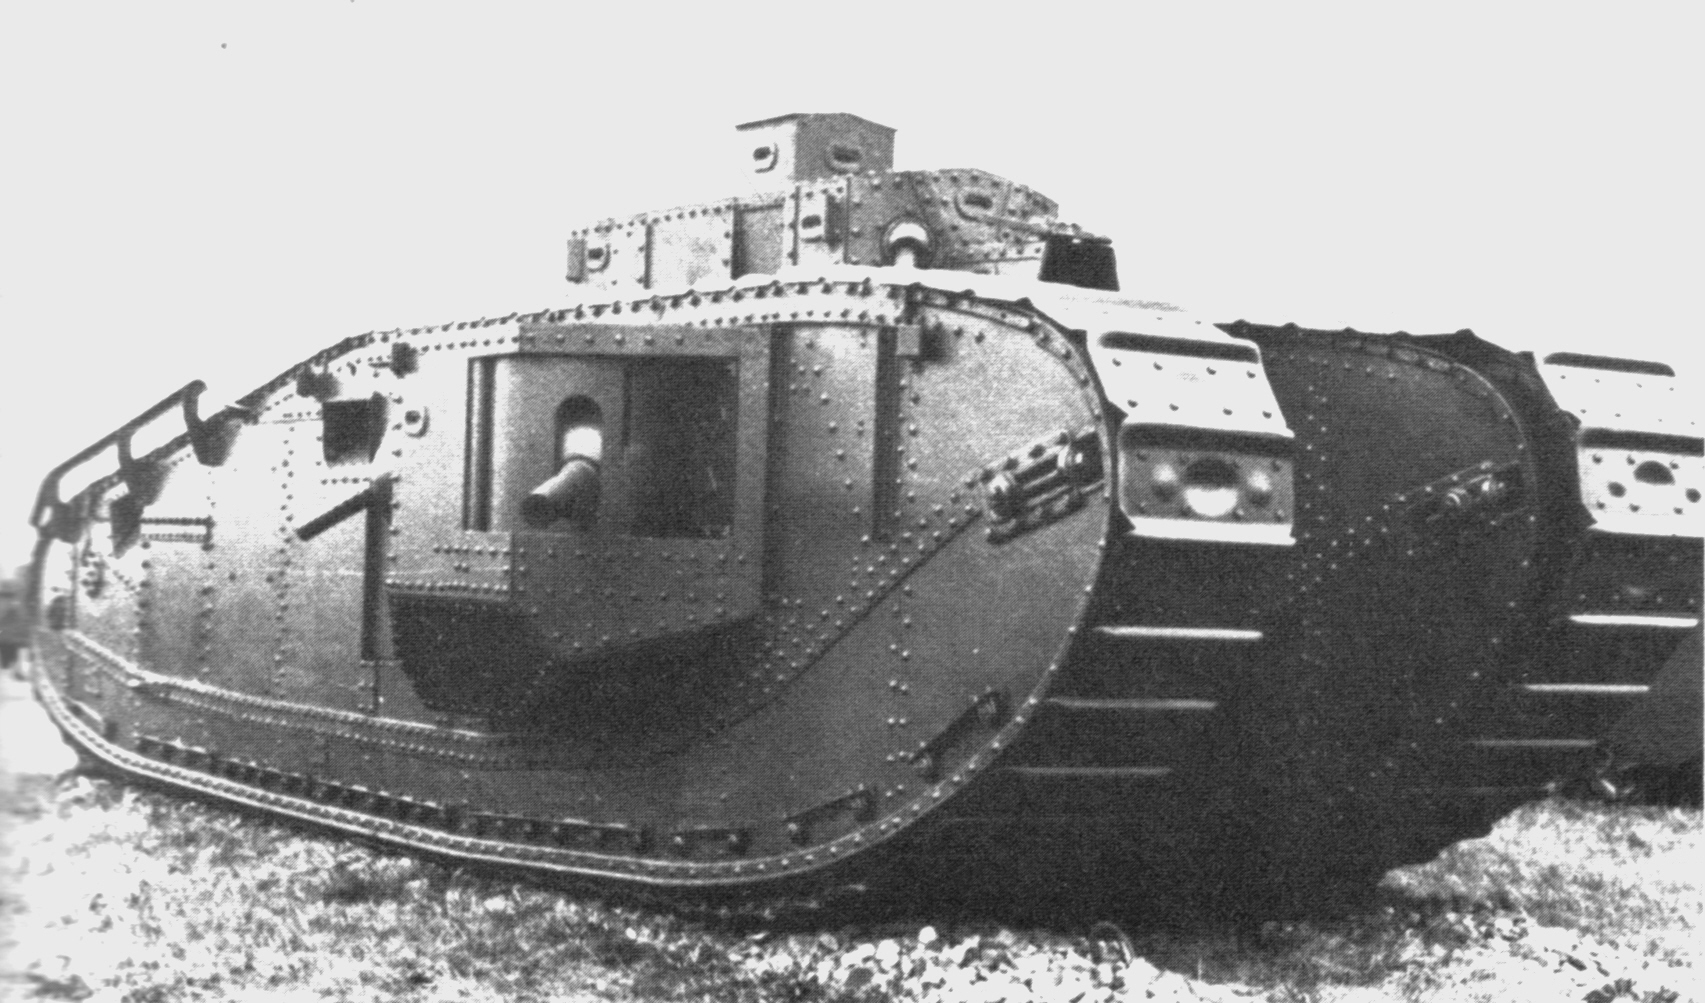 الدبابة الأميركية-البريطانية "مارك الثامن" التي لم تستخدم في الحرب العالمية الأولى رغم إنتاج 100 نموذج منها ما بين عامي 1919 و1920